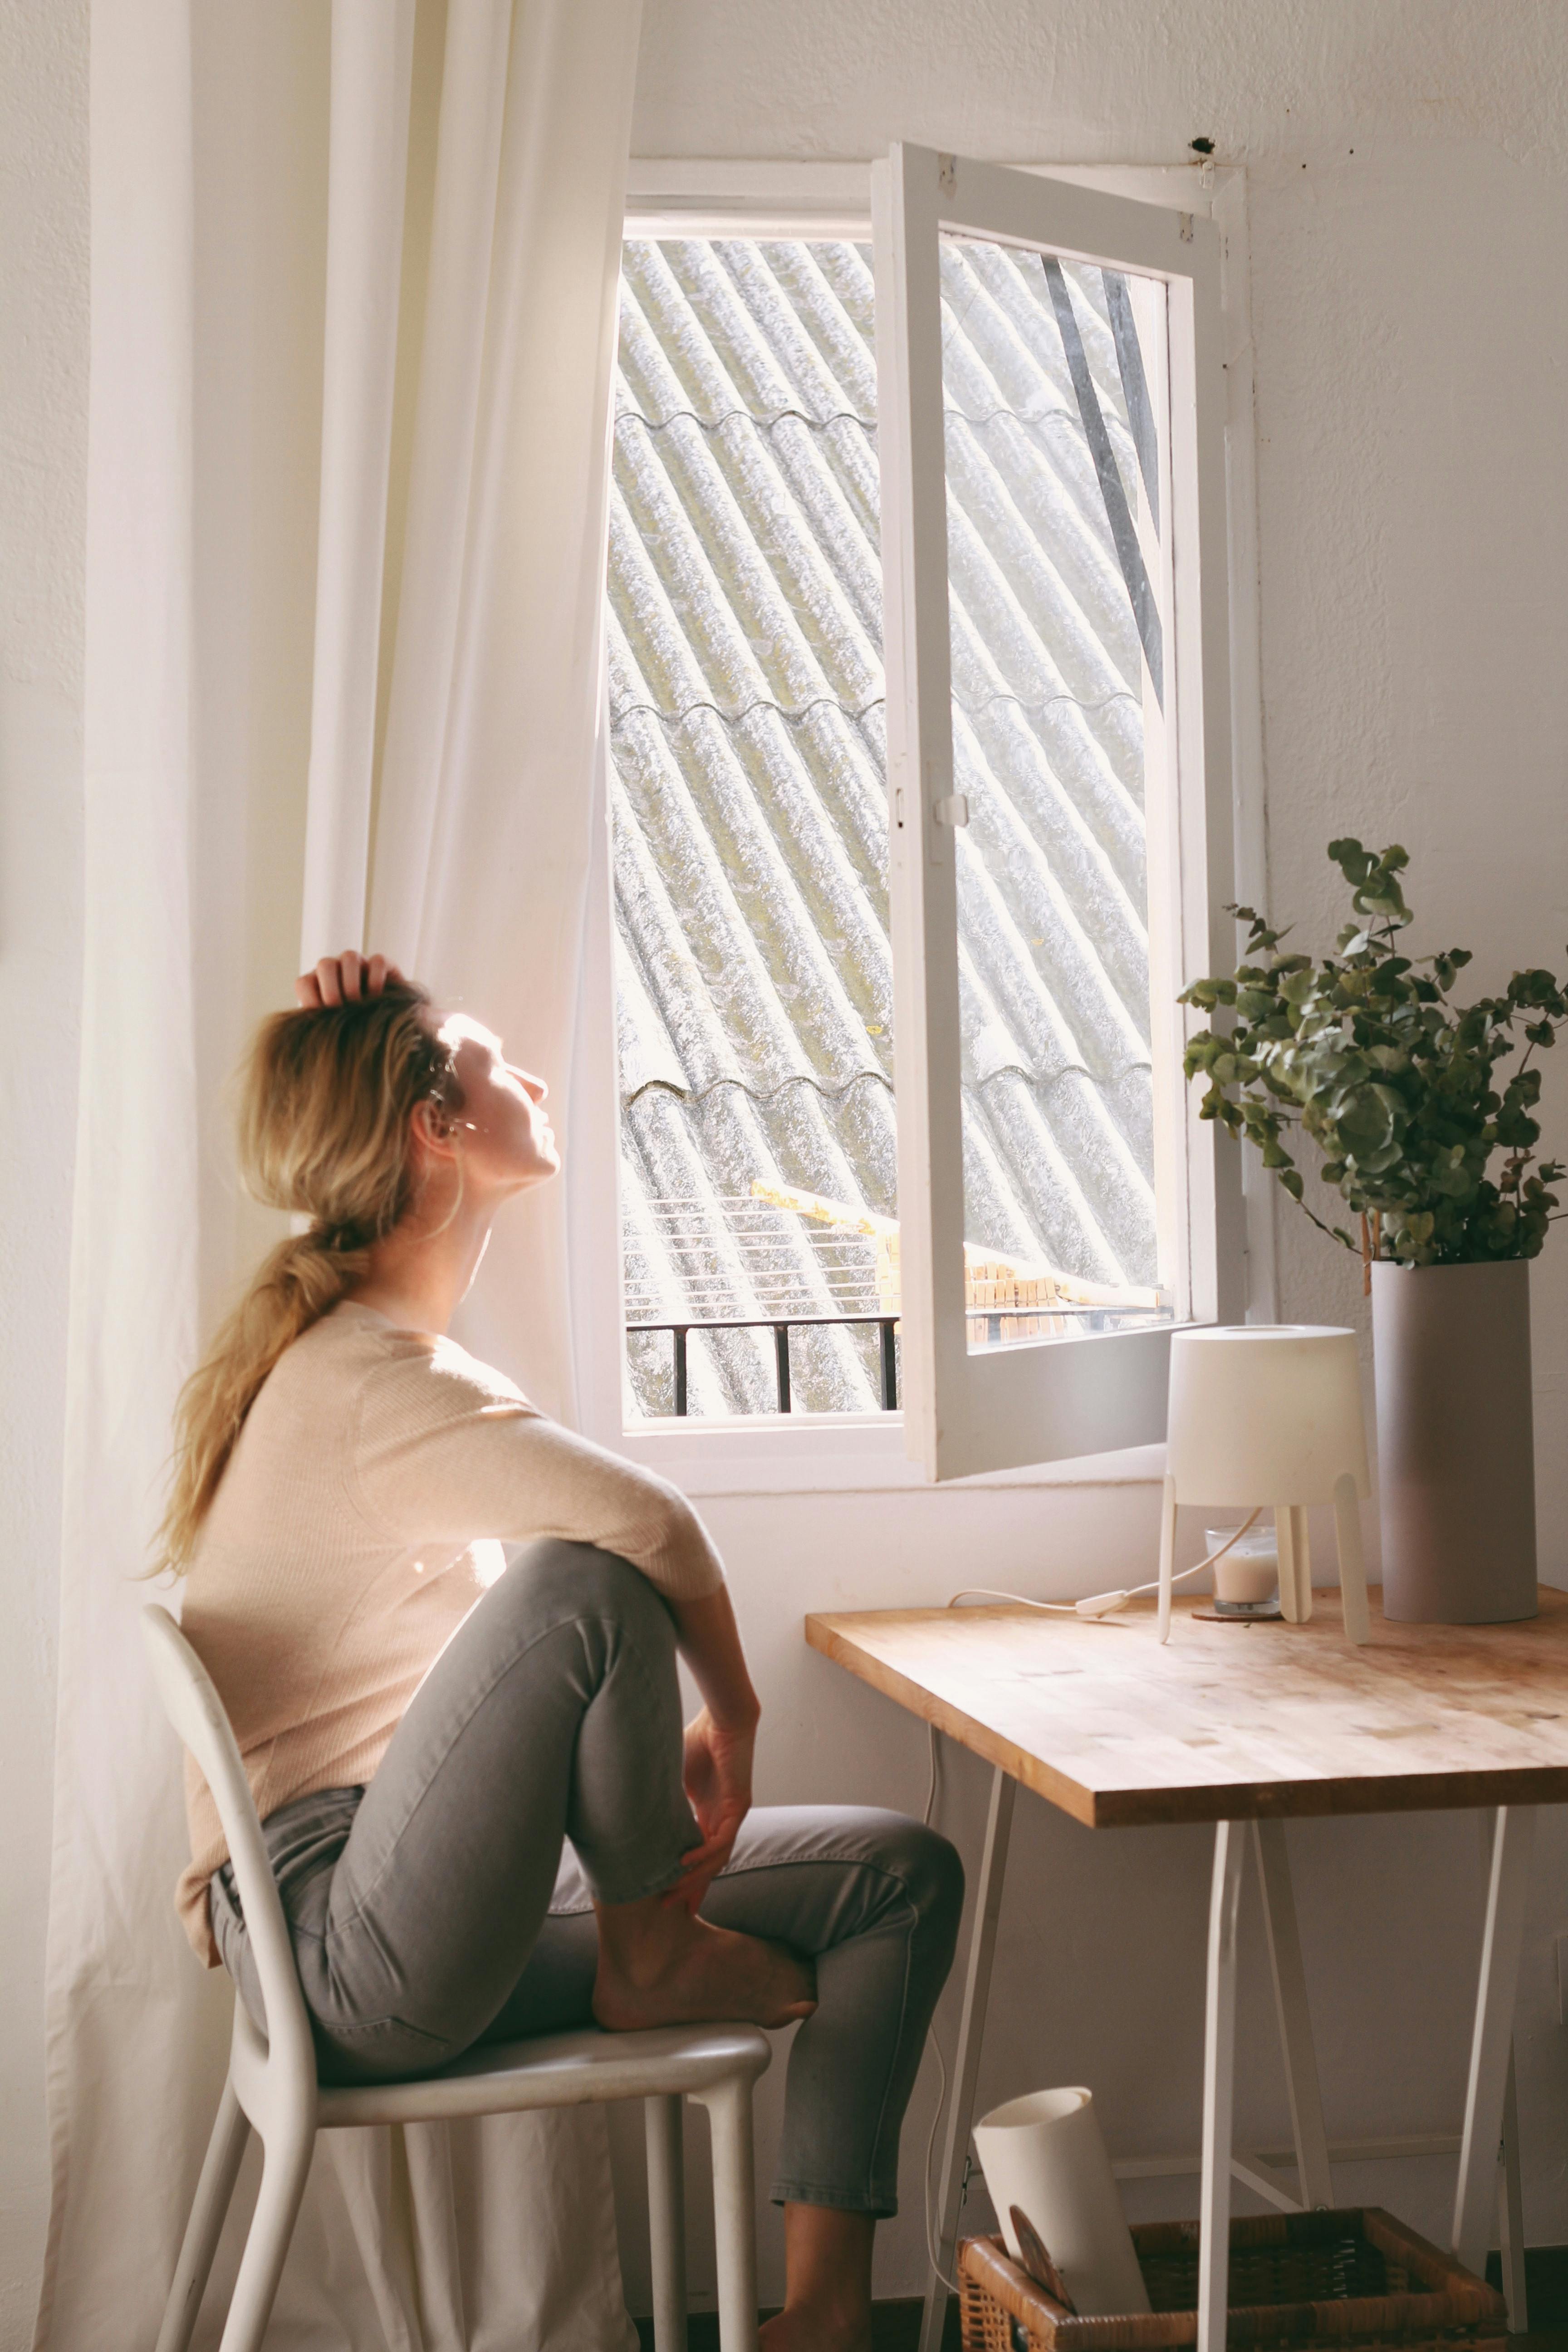 Una joven mirando por la ventana de su Apartamento | Fuente: Pexels